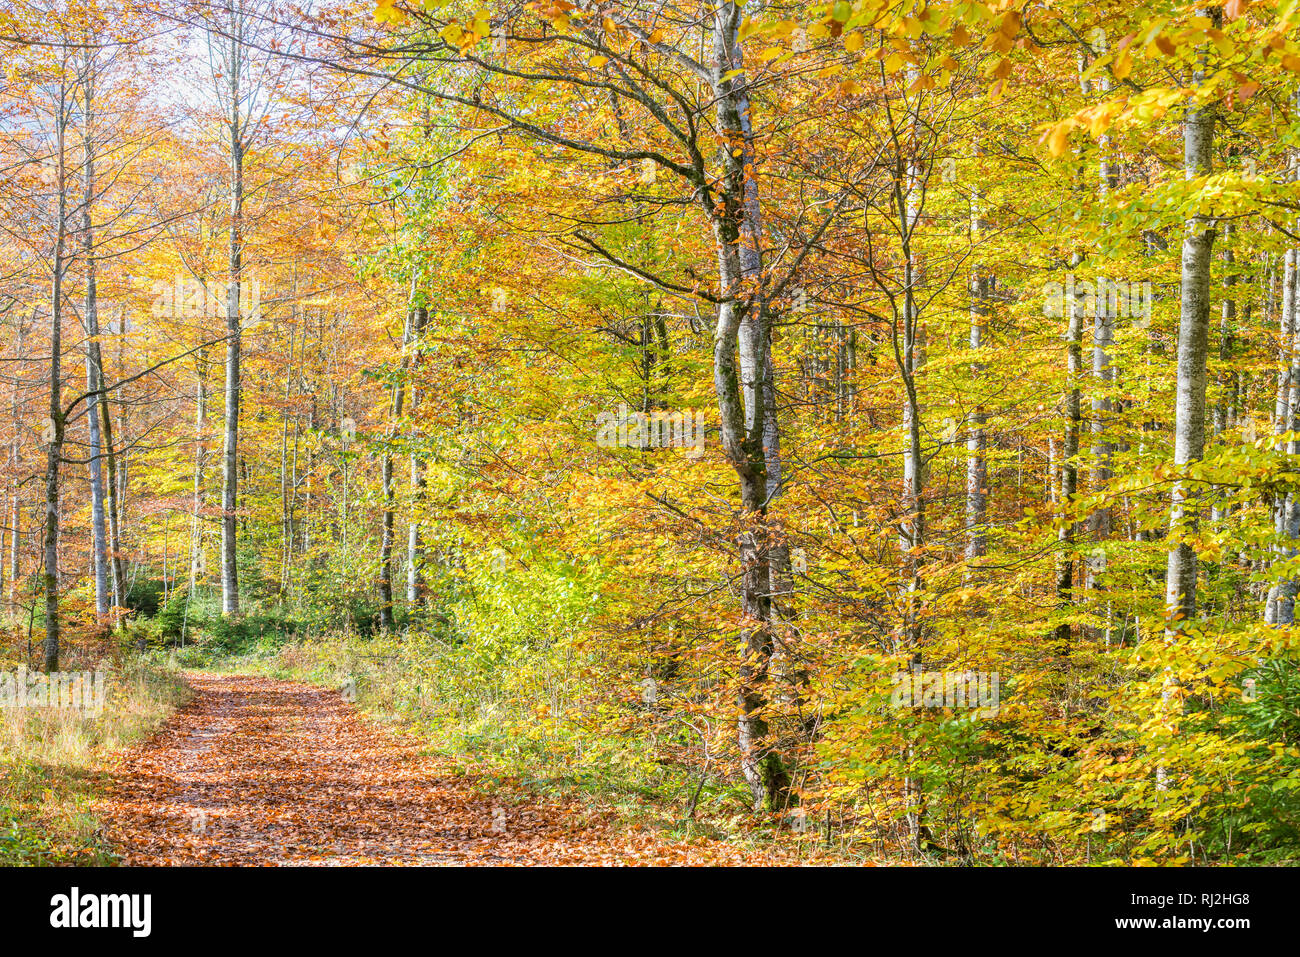 Wanderweg in einer Buche Wald im Herbst. Landkreis Bad Tölz-Wolfratshausen, Bayern, Deutschland. Stockfoto